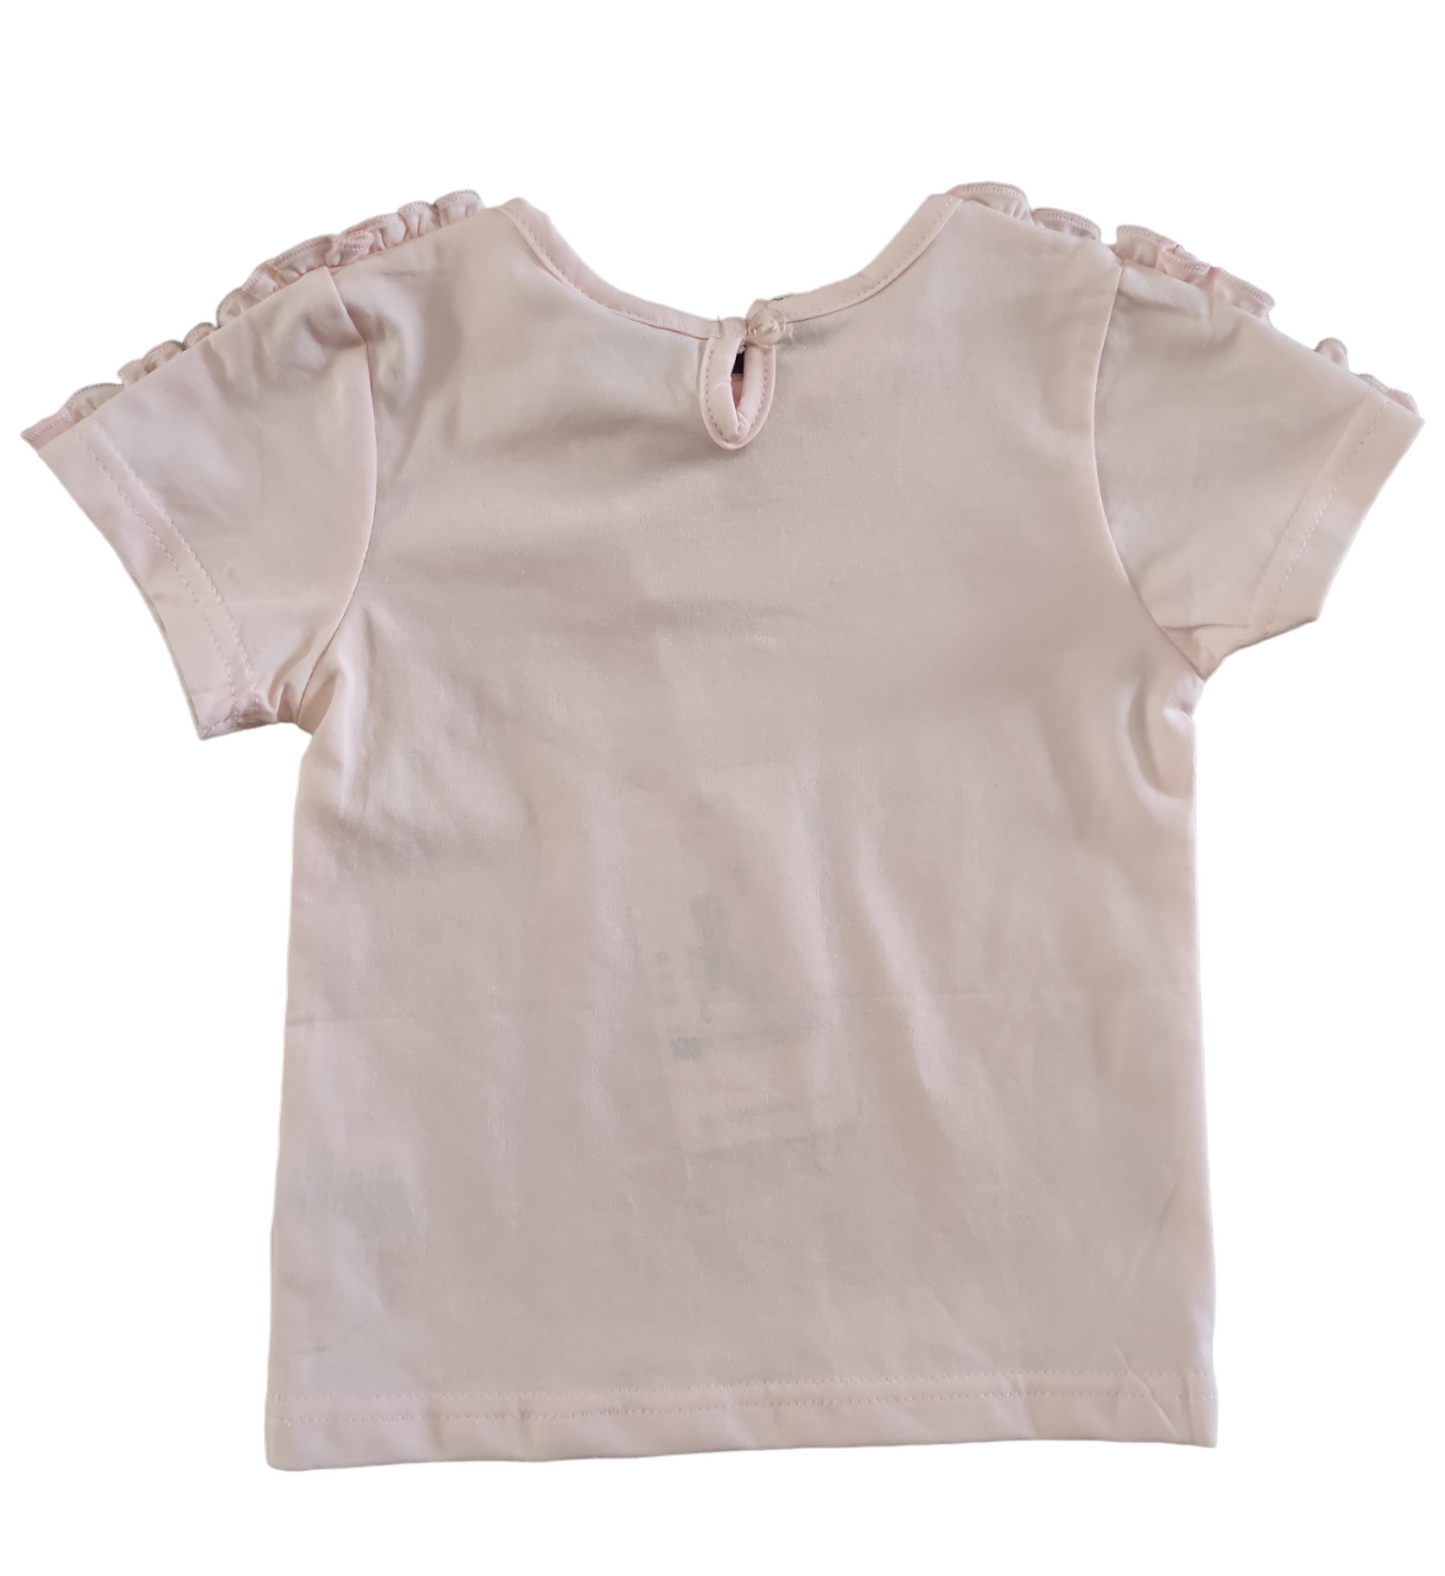 Maglietta Basic Tinta Unita Rosa Antico con Rouches Manica Corta Bambina 6-36 Mesi